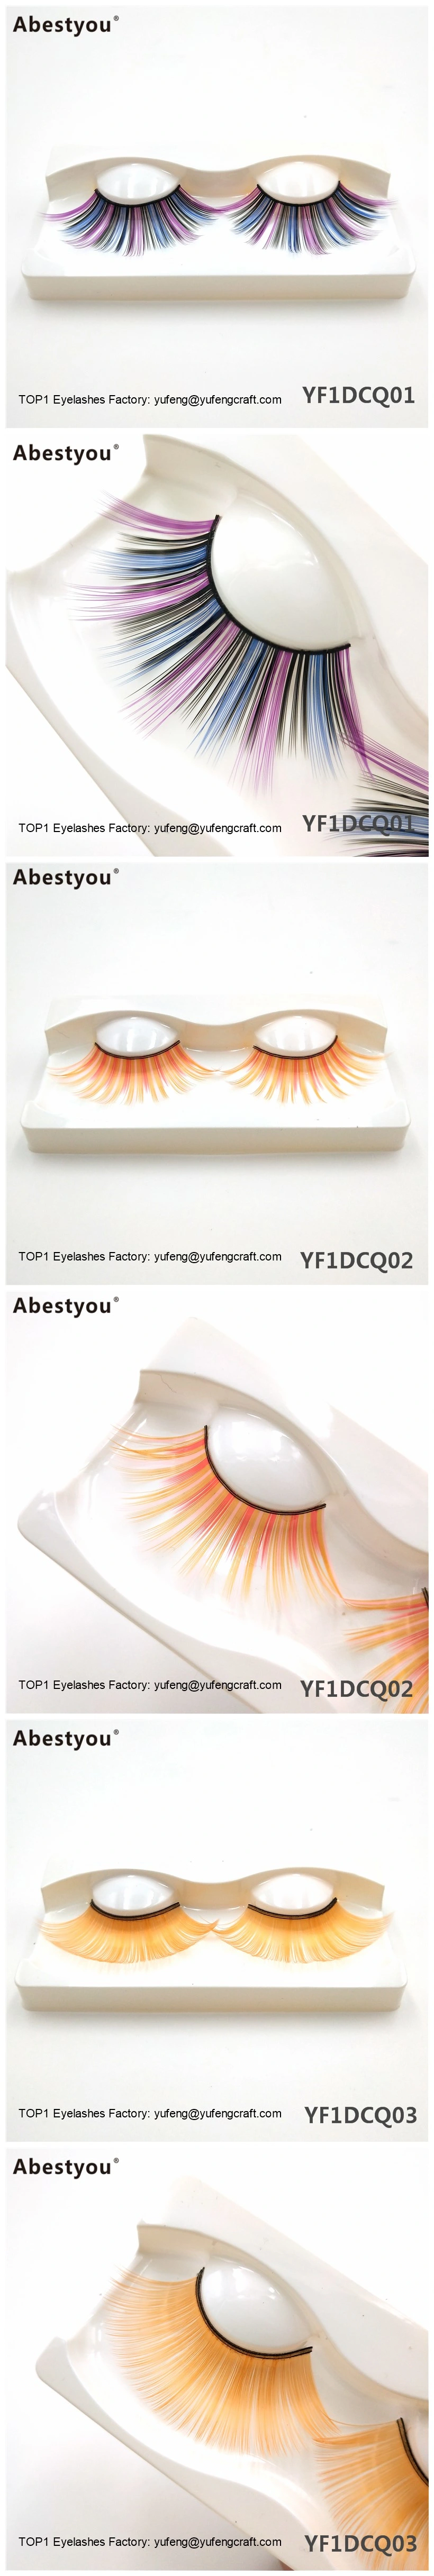 Abestyou Cruelty Free Vegan Faux Mink Eyelashes 3D Colorful Eyelashes